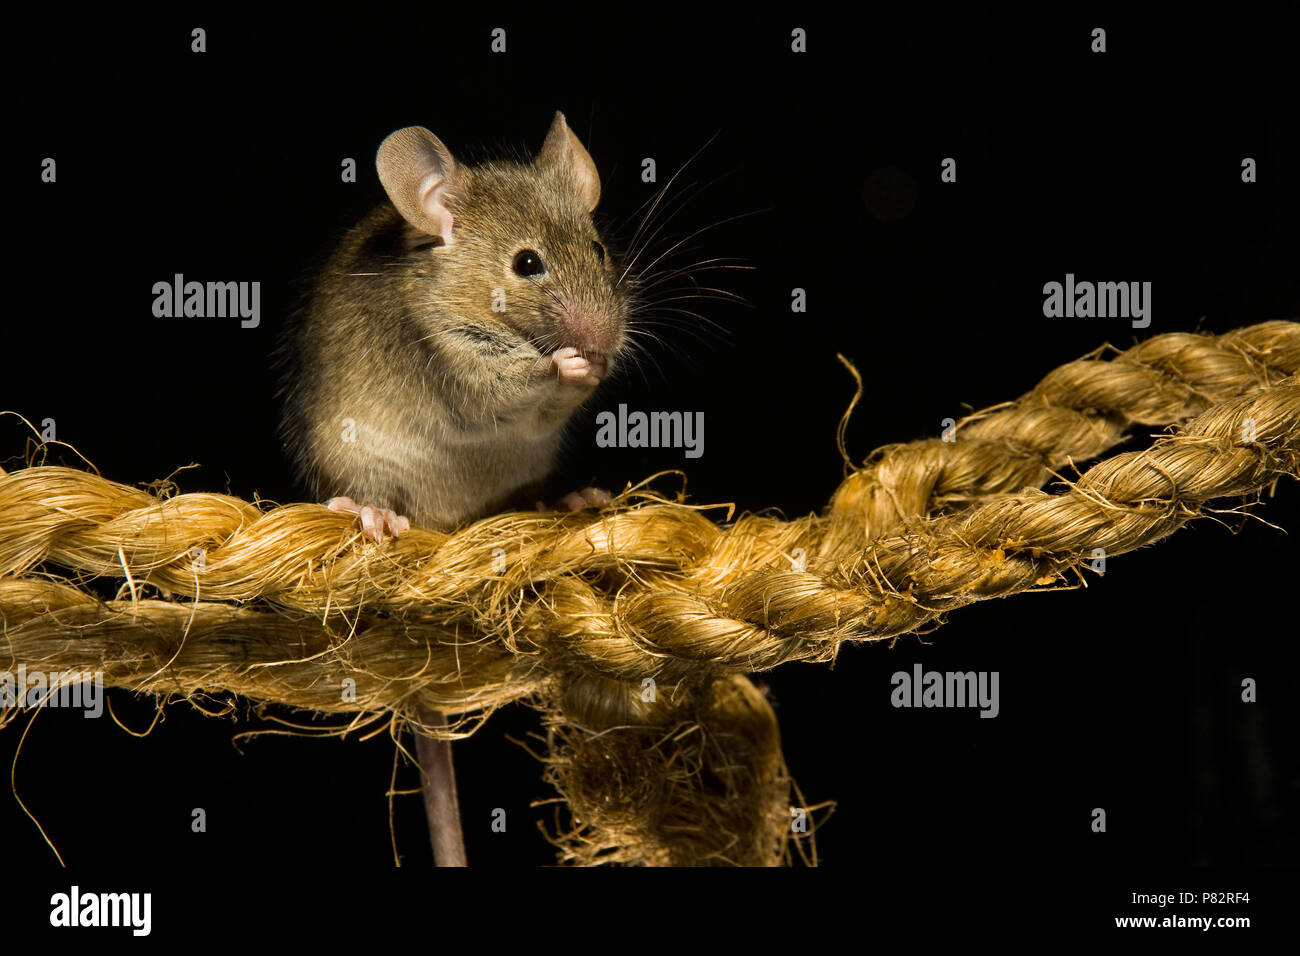 Huismuis op een touw; Casa el ratón sobre una cuerda Foto de stock